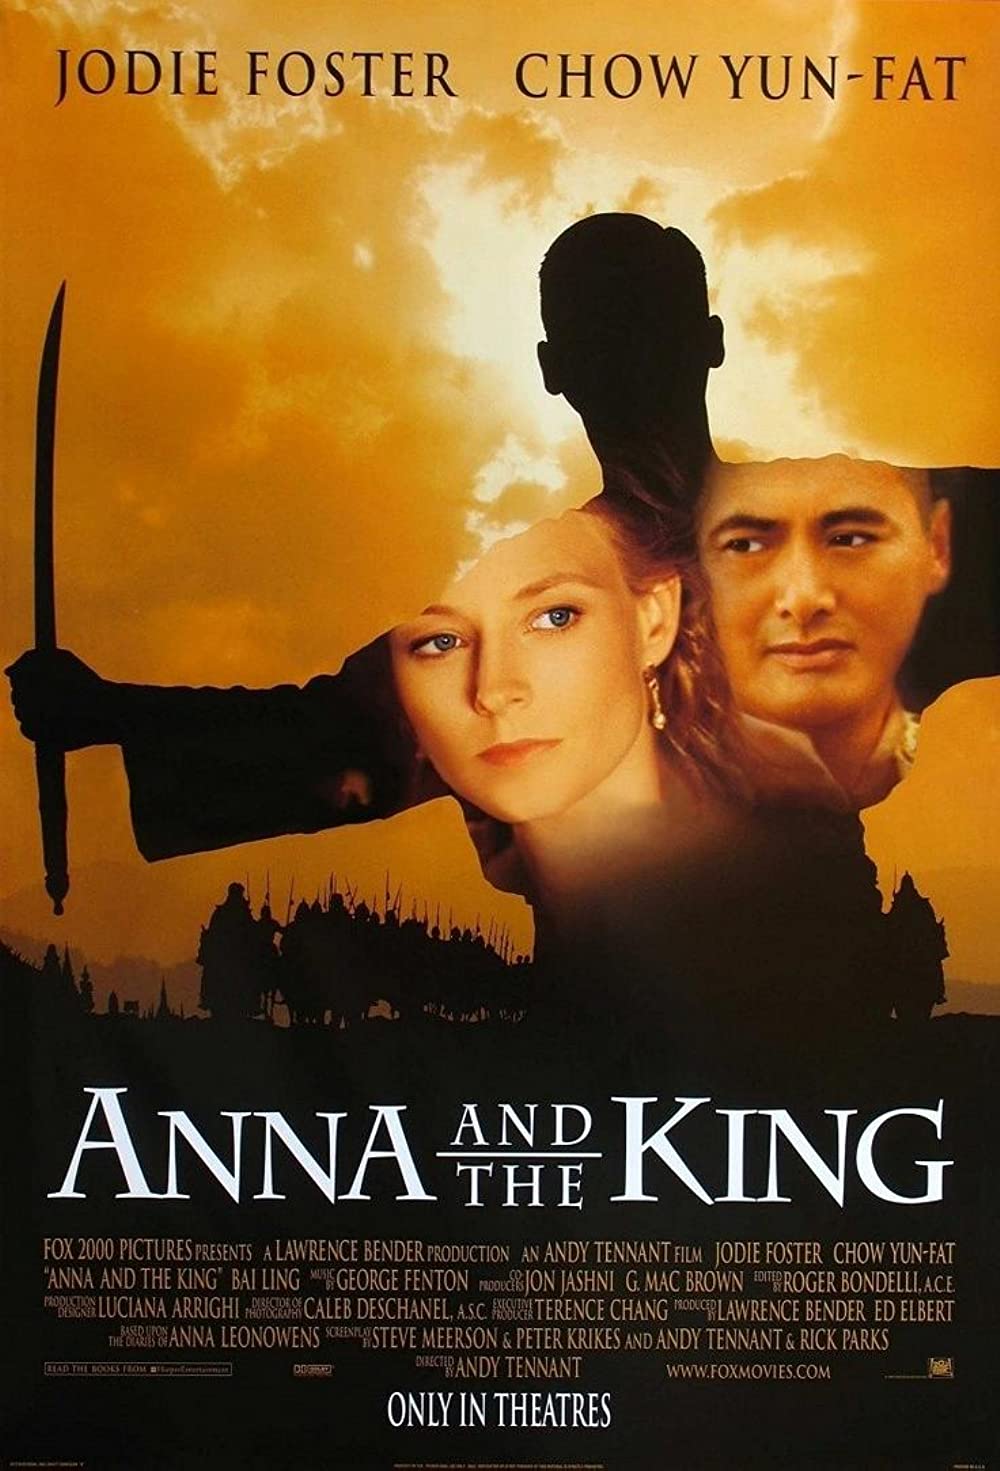 Filmbeschreibung zu Anna und der König